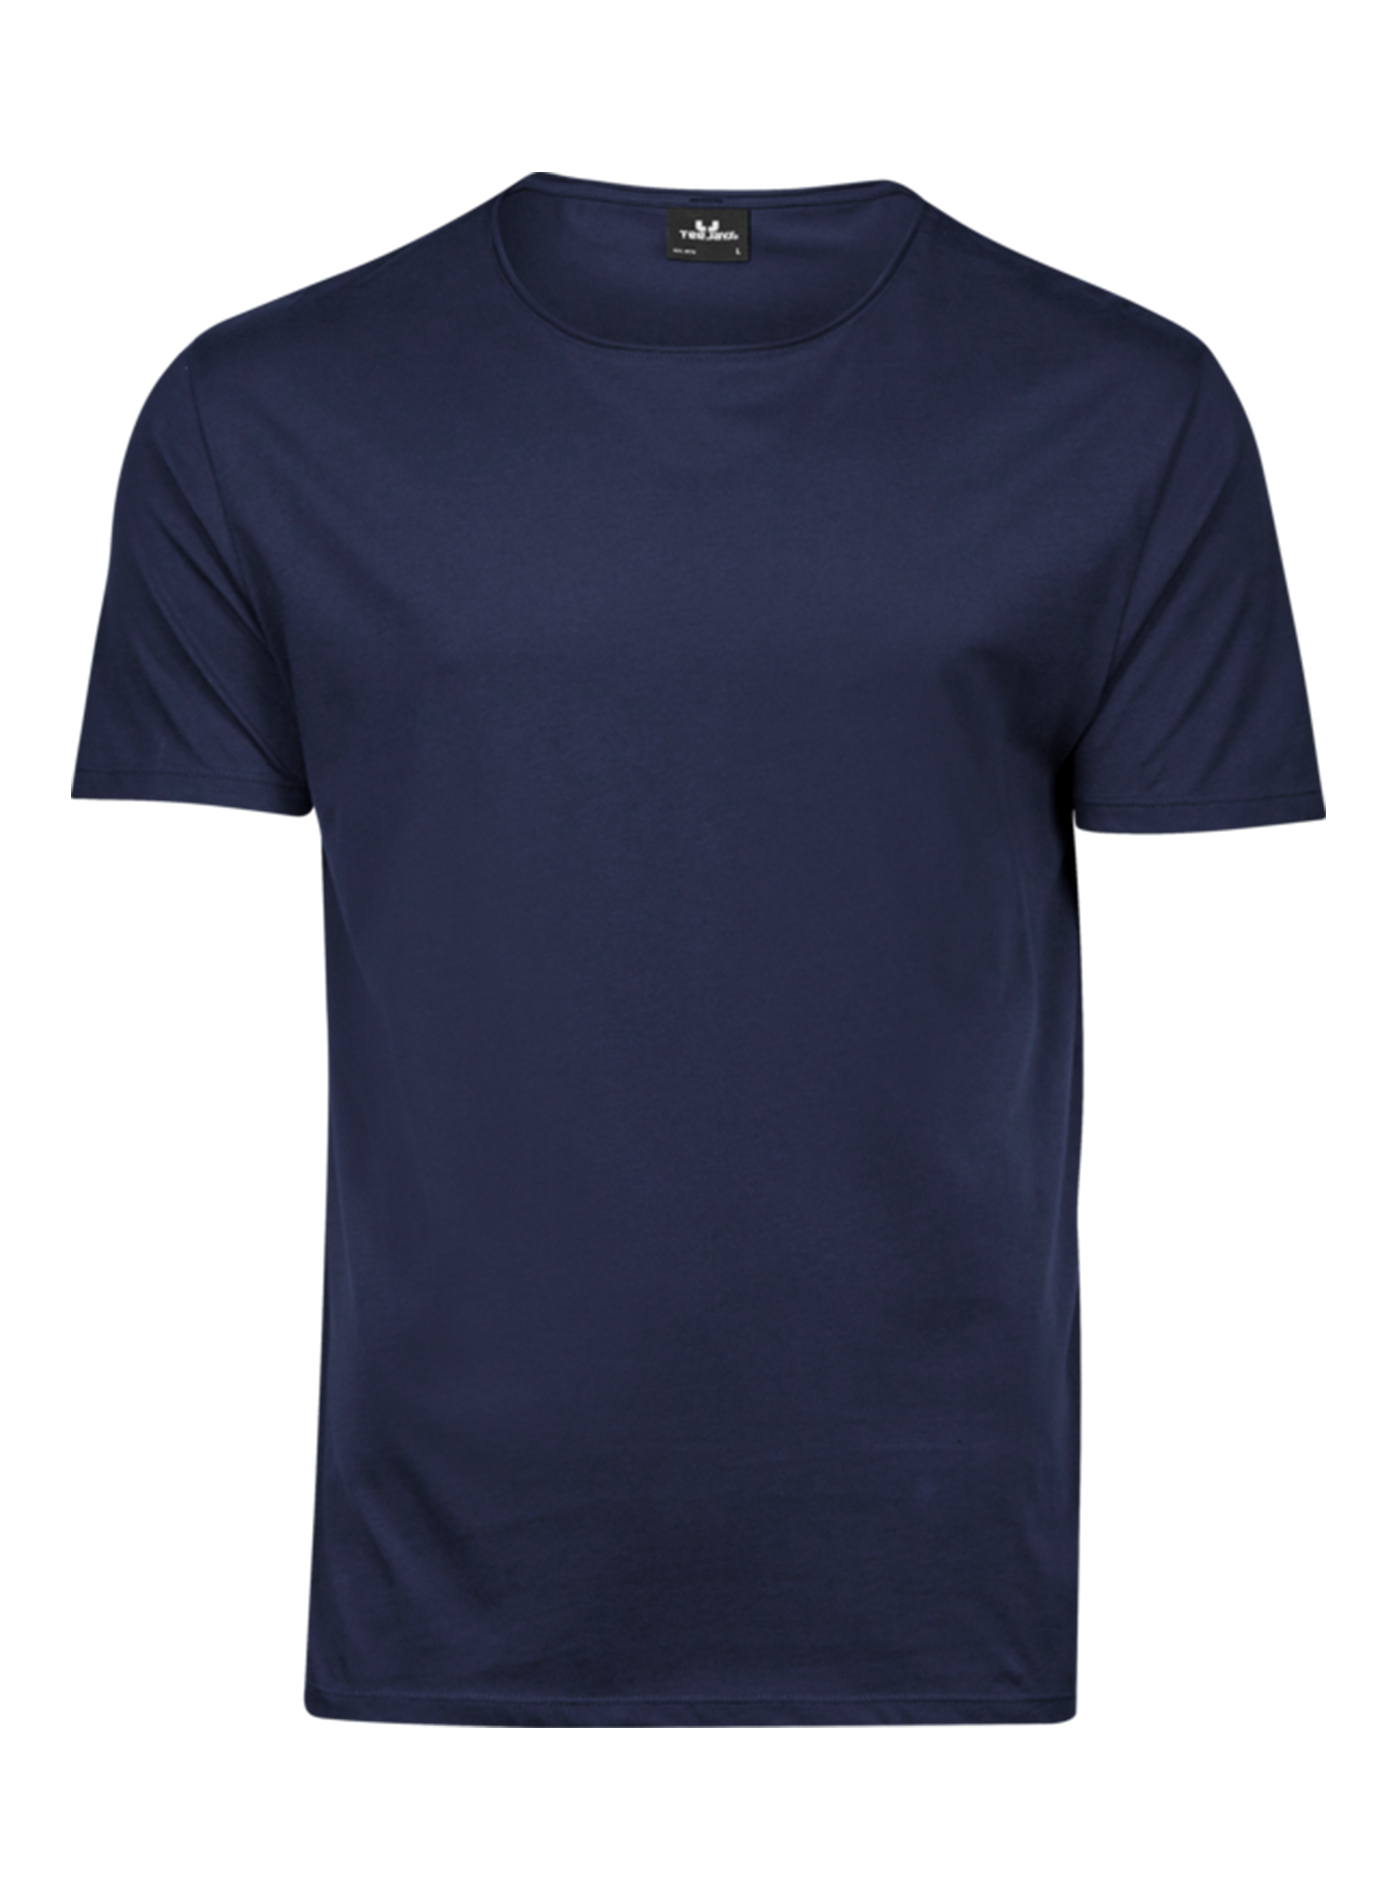 Pánské tričko Raw Tee Jays - Námořní modrá M